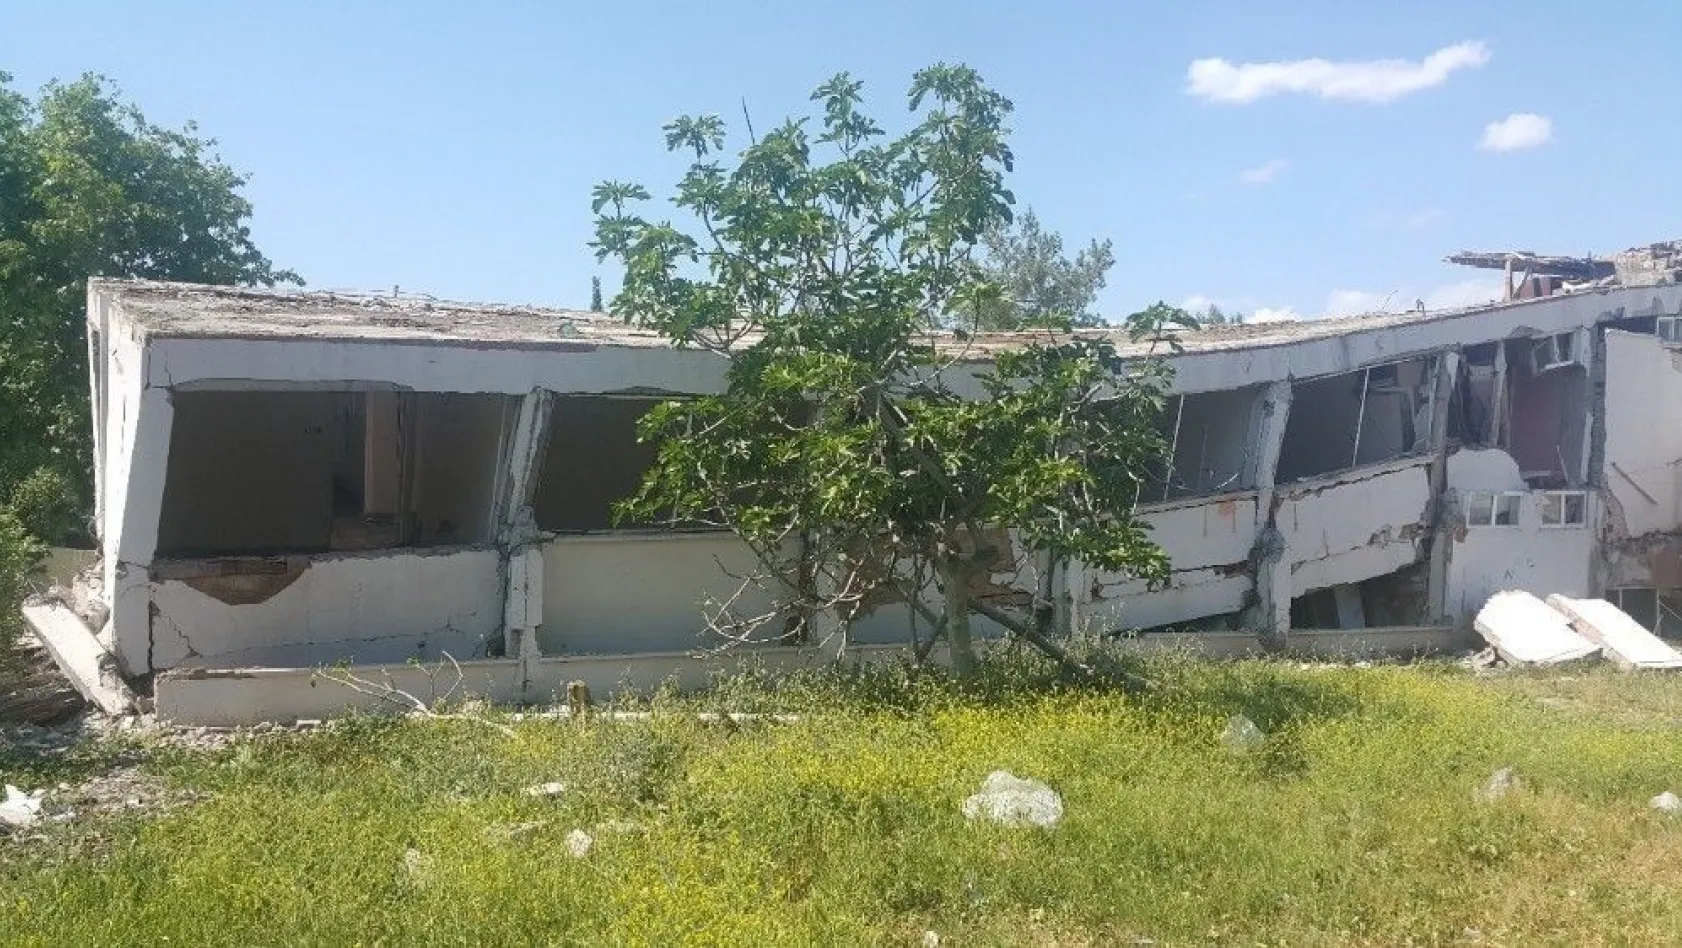 Samsat depremine ilişkin Adıyaman Üniversitesinin ön inceleme raporu açıklandı
